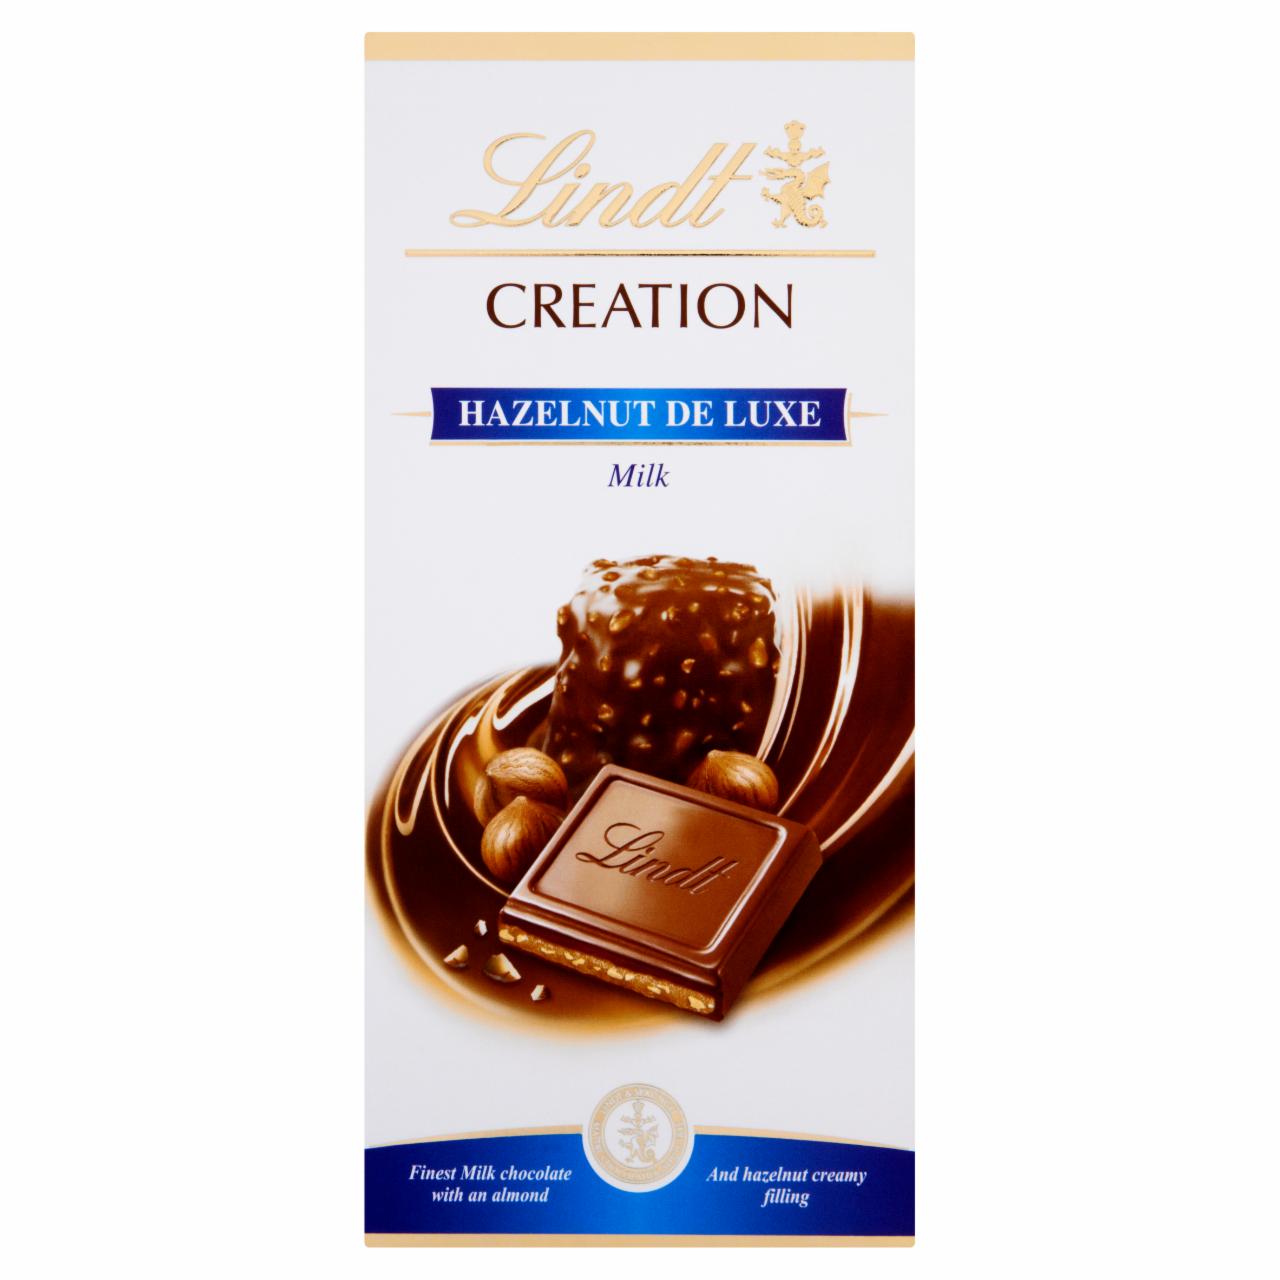 Zdjęcia - Lindt Creation Hazelnut De Luxe Wyśmienita mleczna czekolada nadziewana 150 g